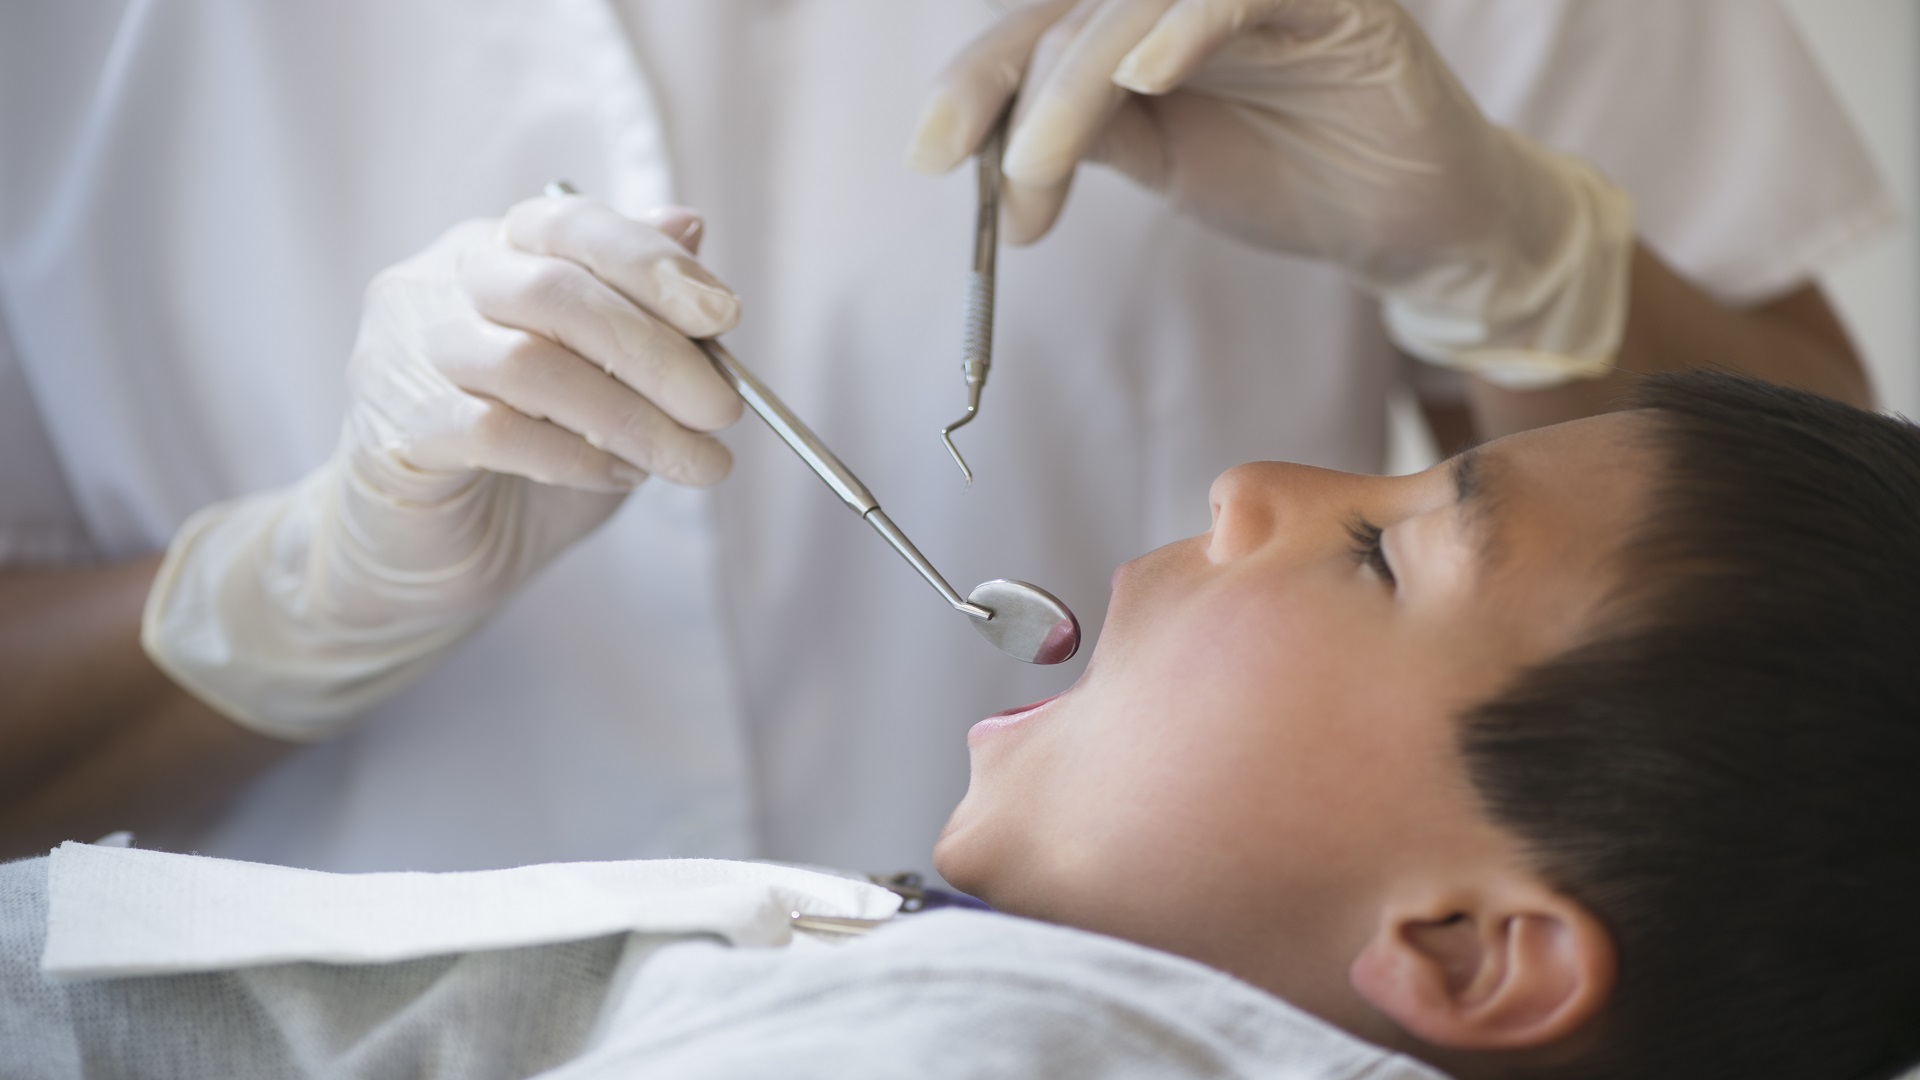 كيف يقوم أطباء أسنان الأطفال بخلع أسنان الأطفال؟